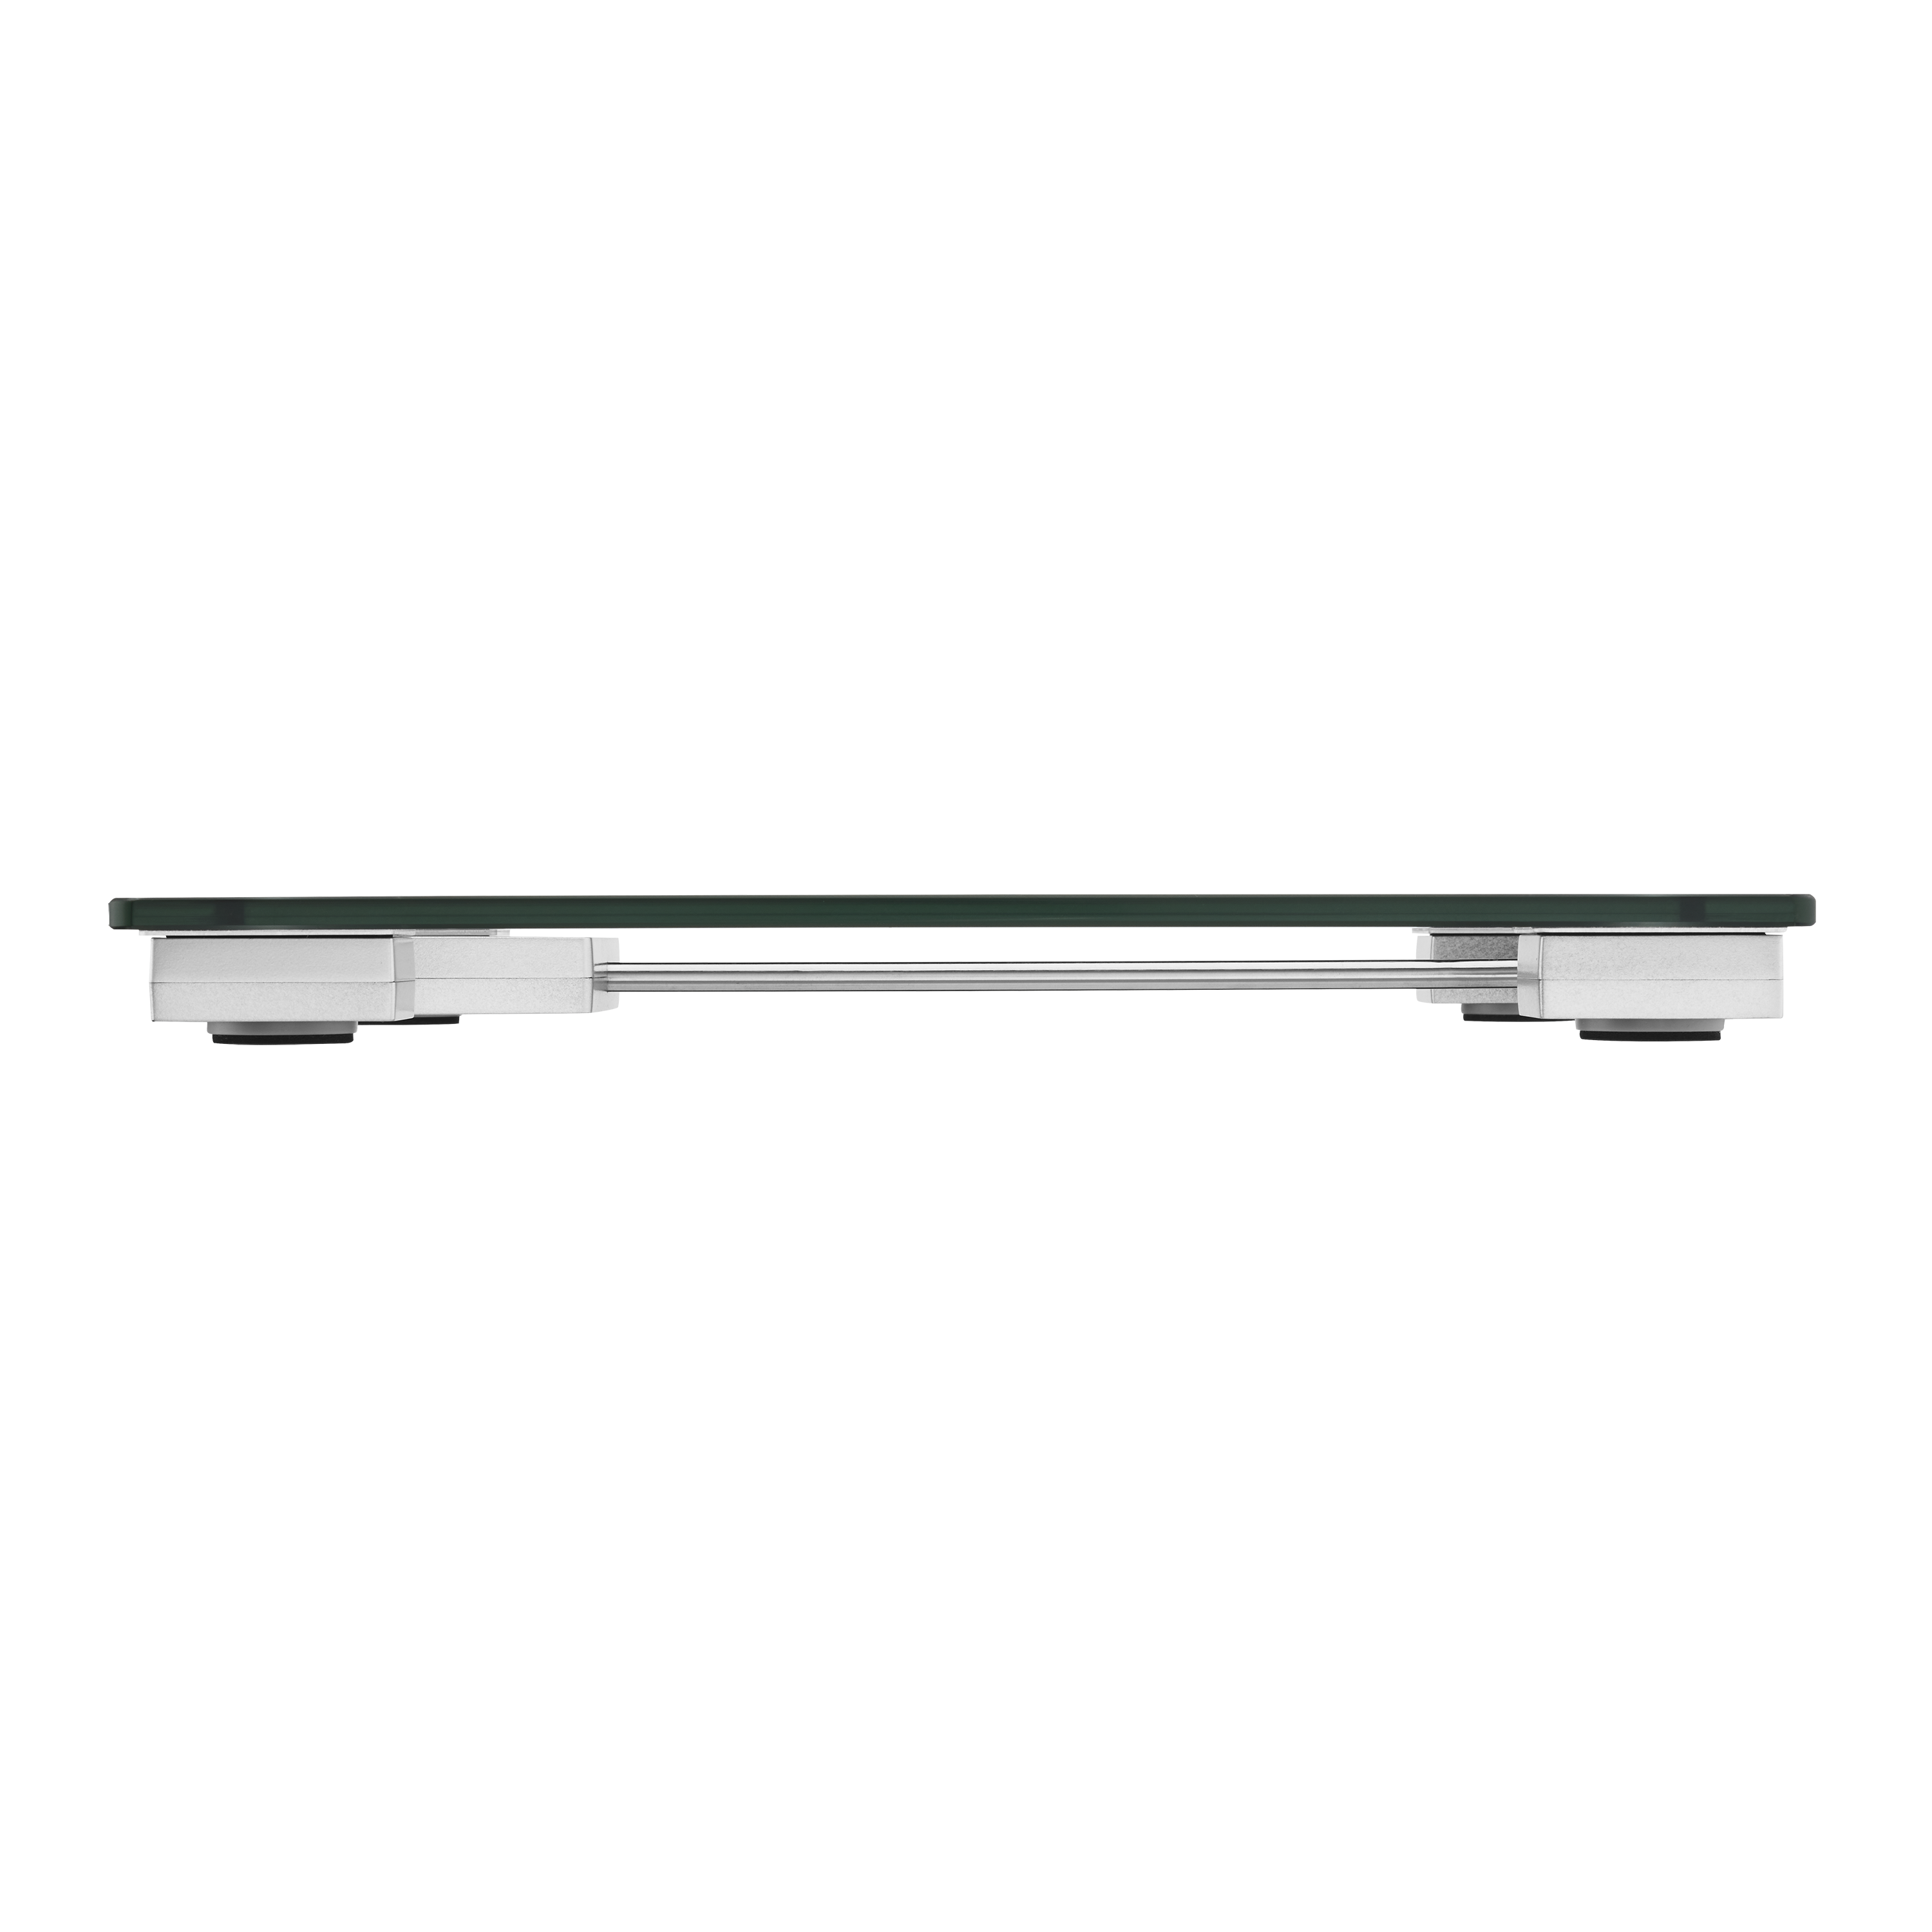 CONAIR TH315 Thinner Digital Glass Scale 